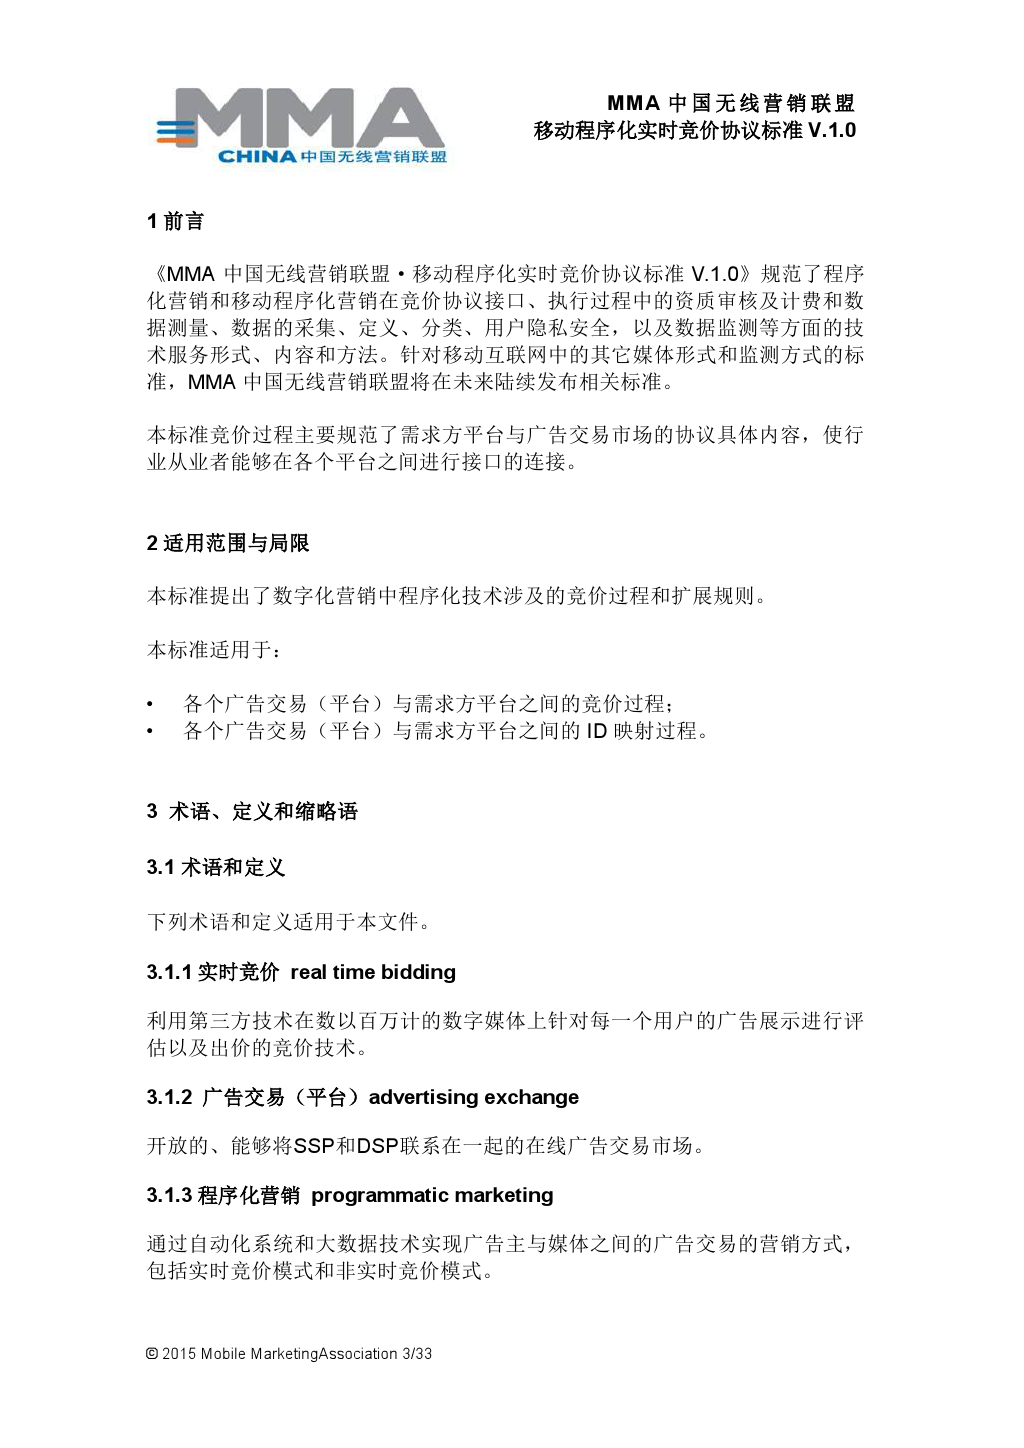 MMA中国无线营销联盟移动程序化实时竞价协议标准V.1.0_000004